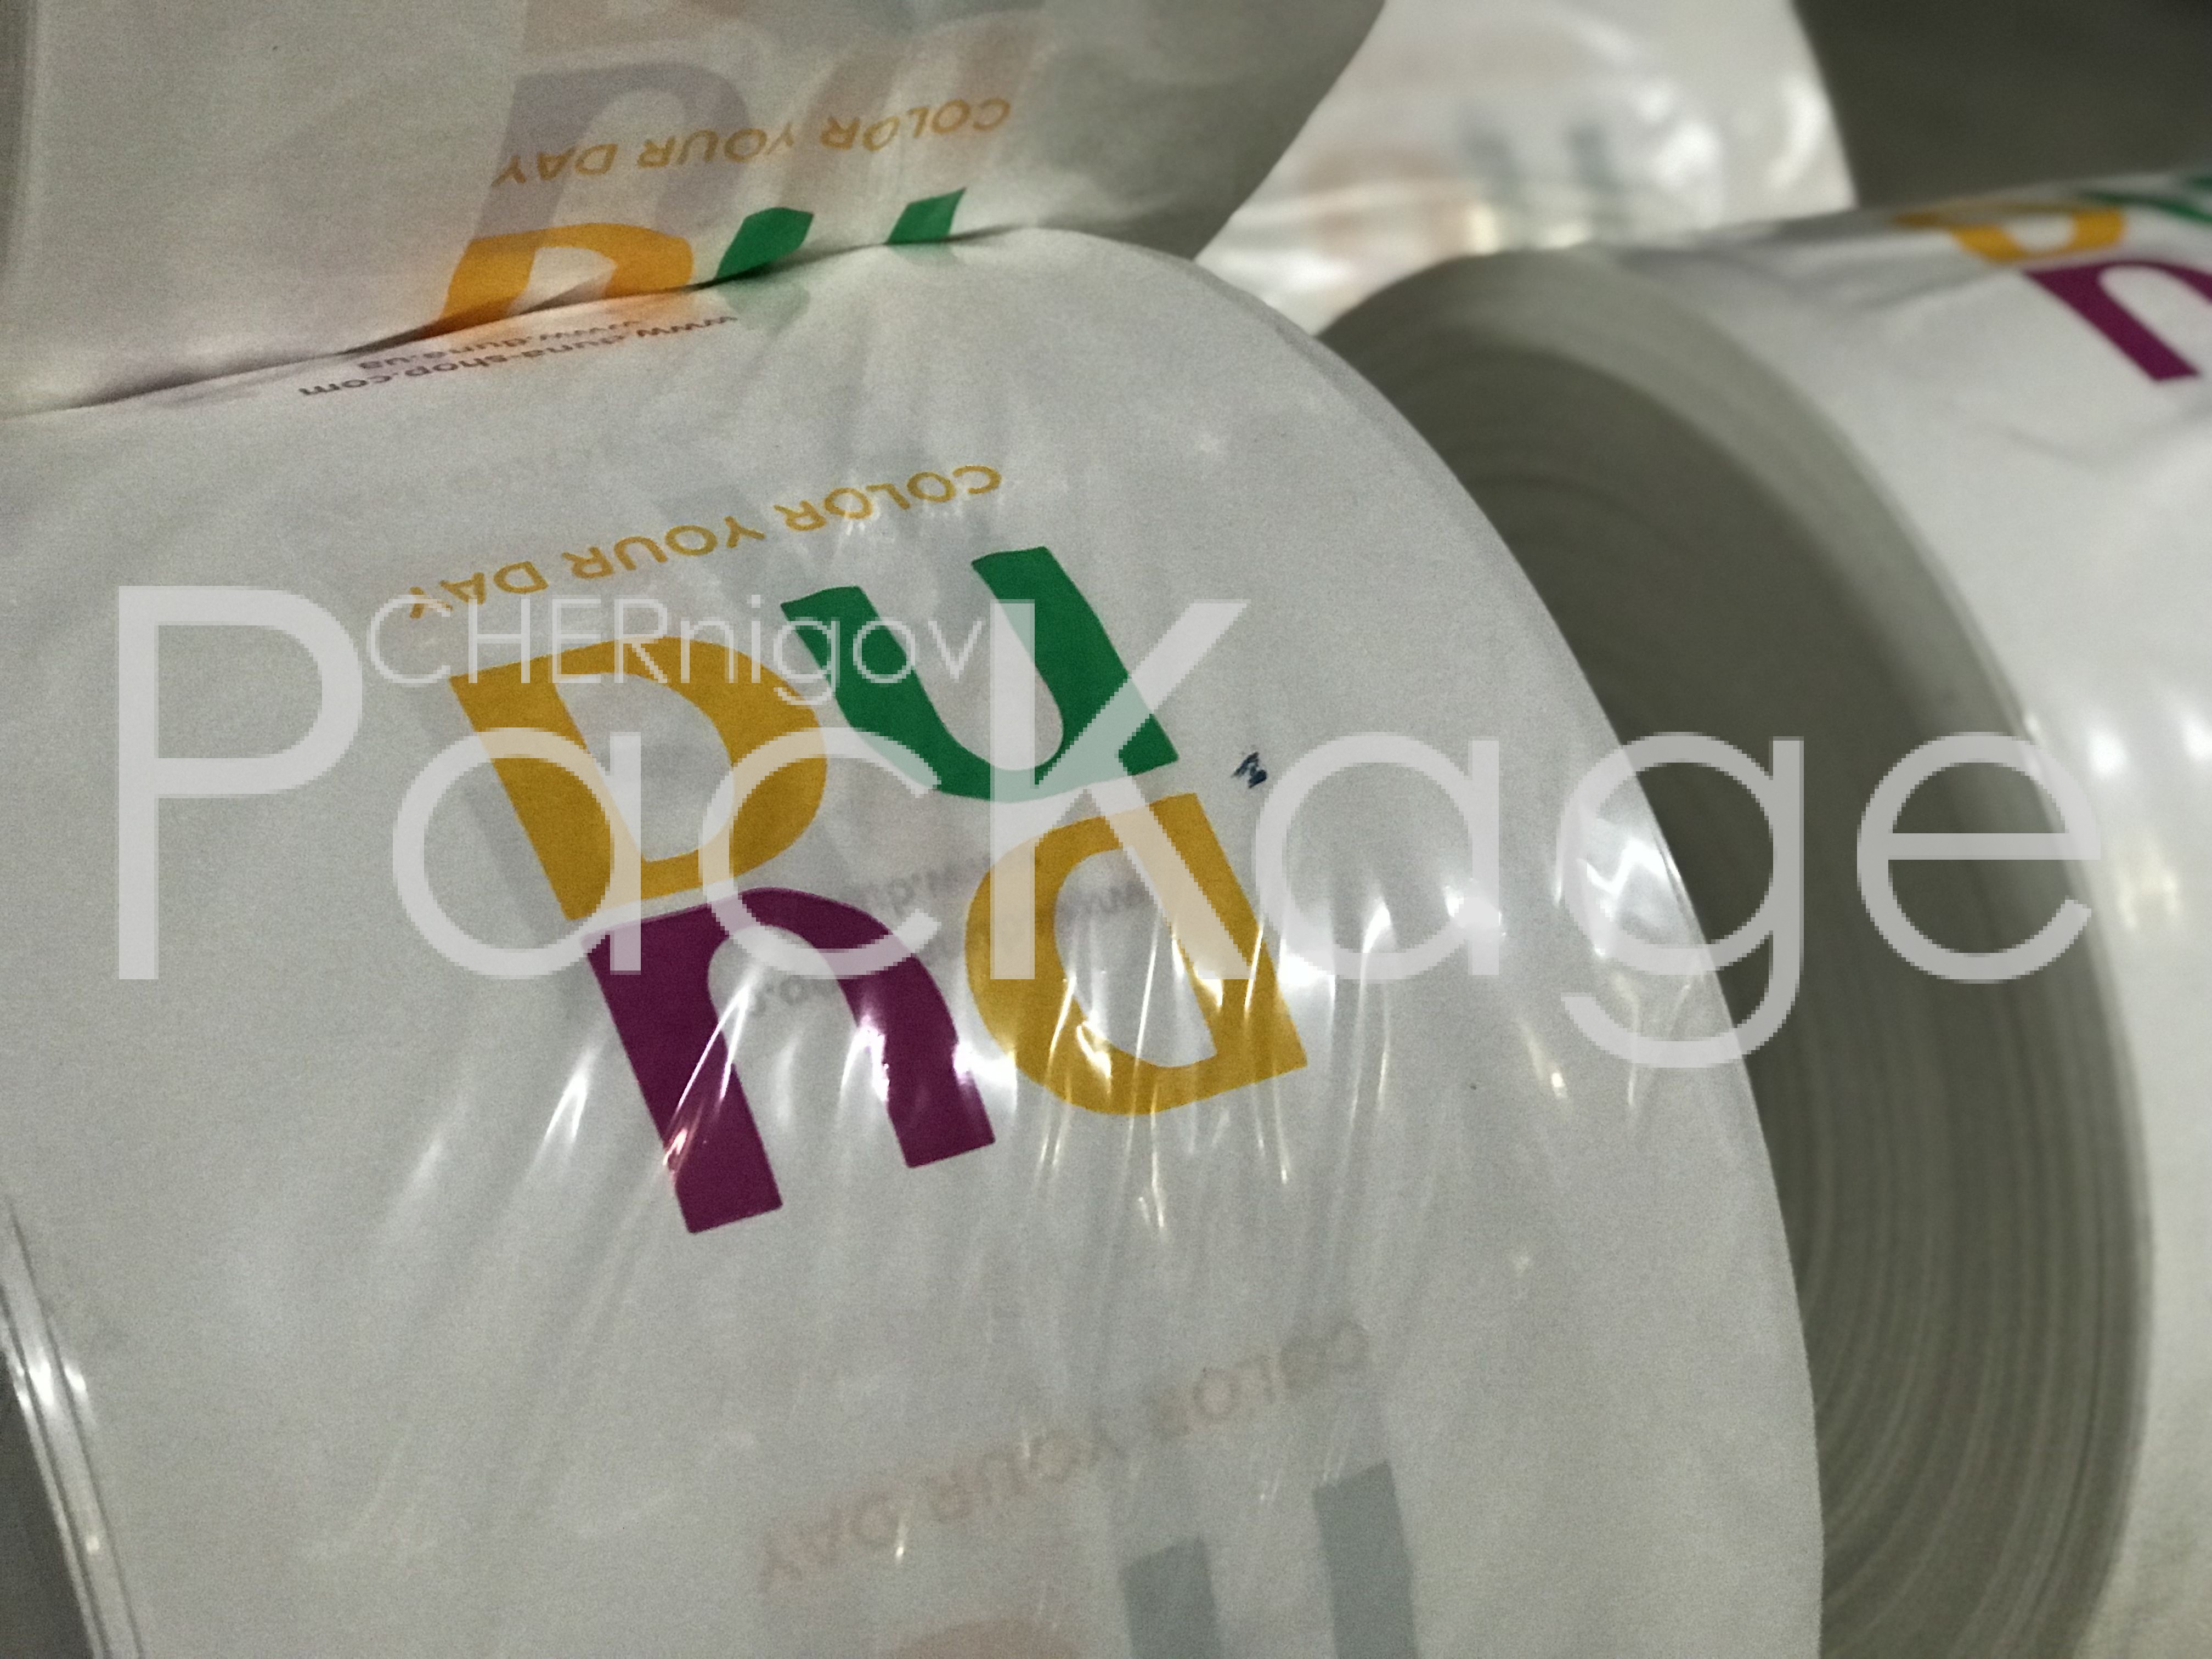 Печать на пакетах полиэтиленовых Chernigov Package - Фото IMG_5616